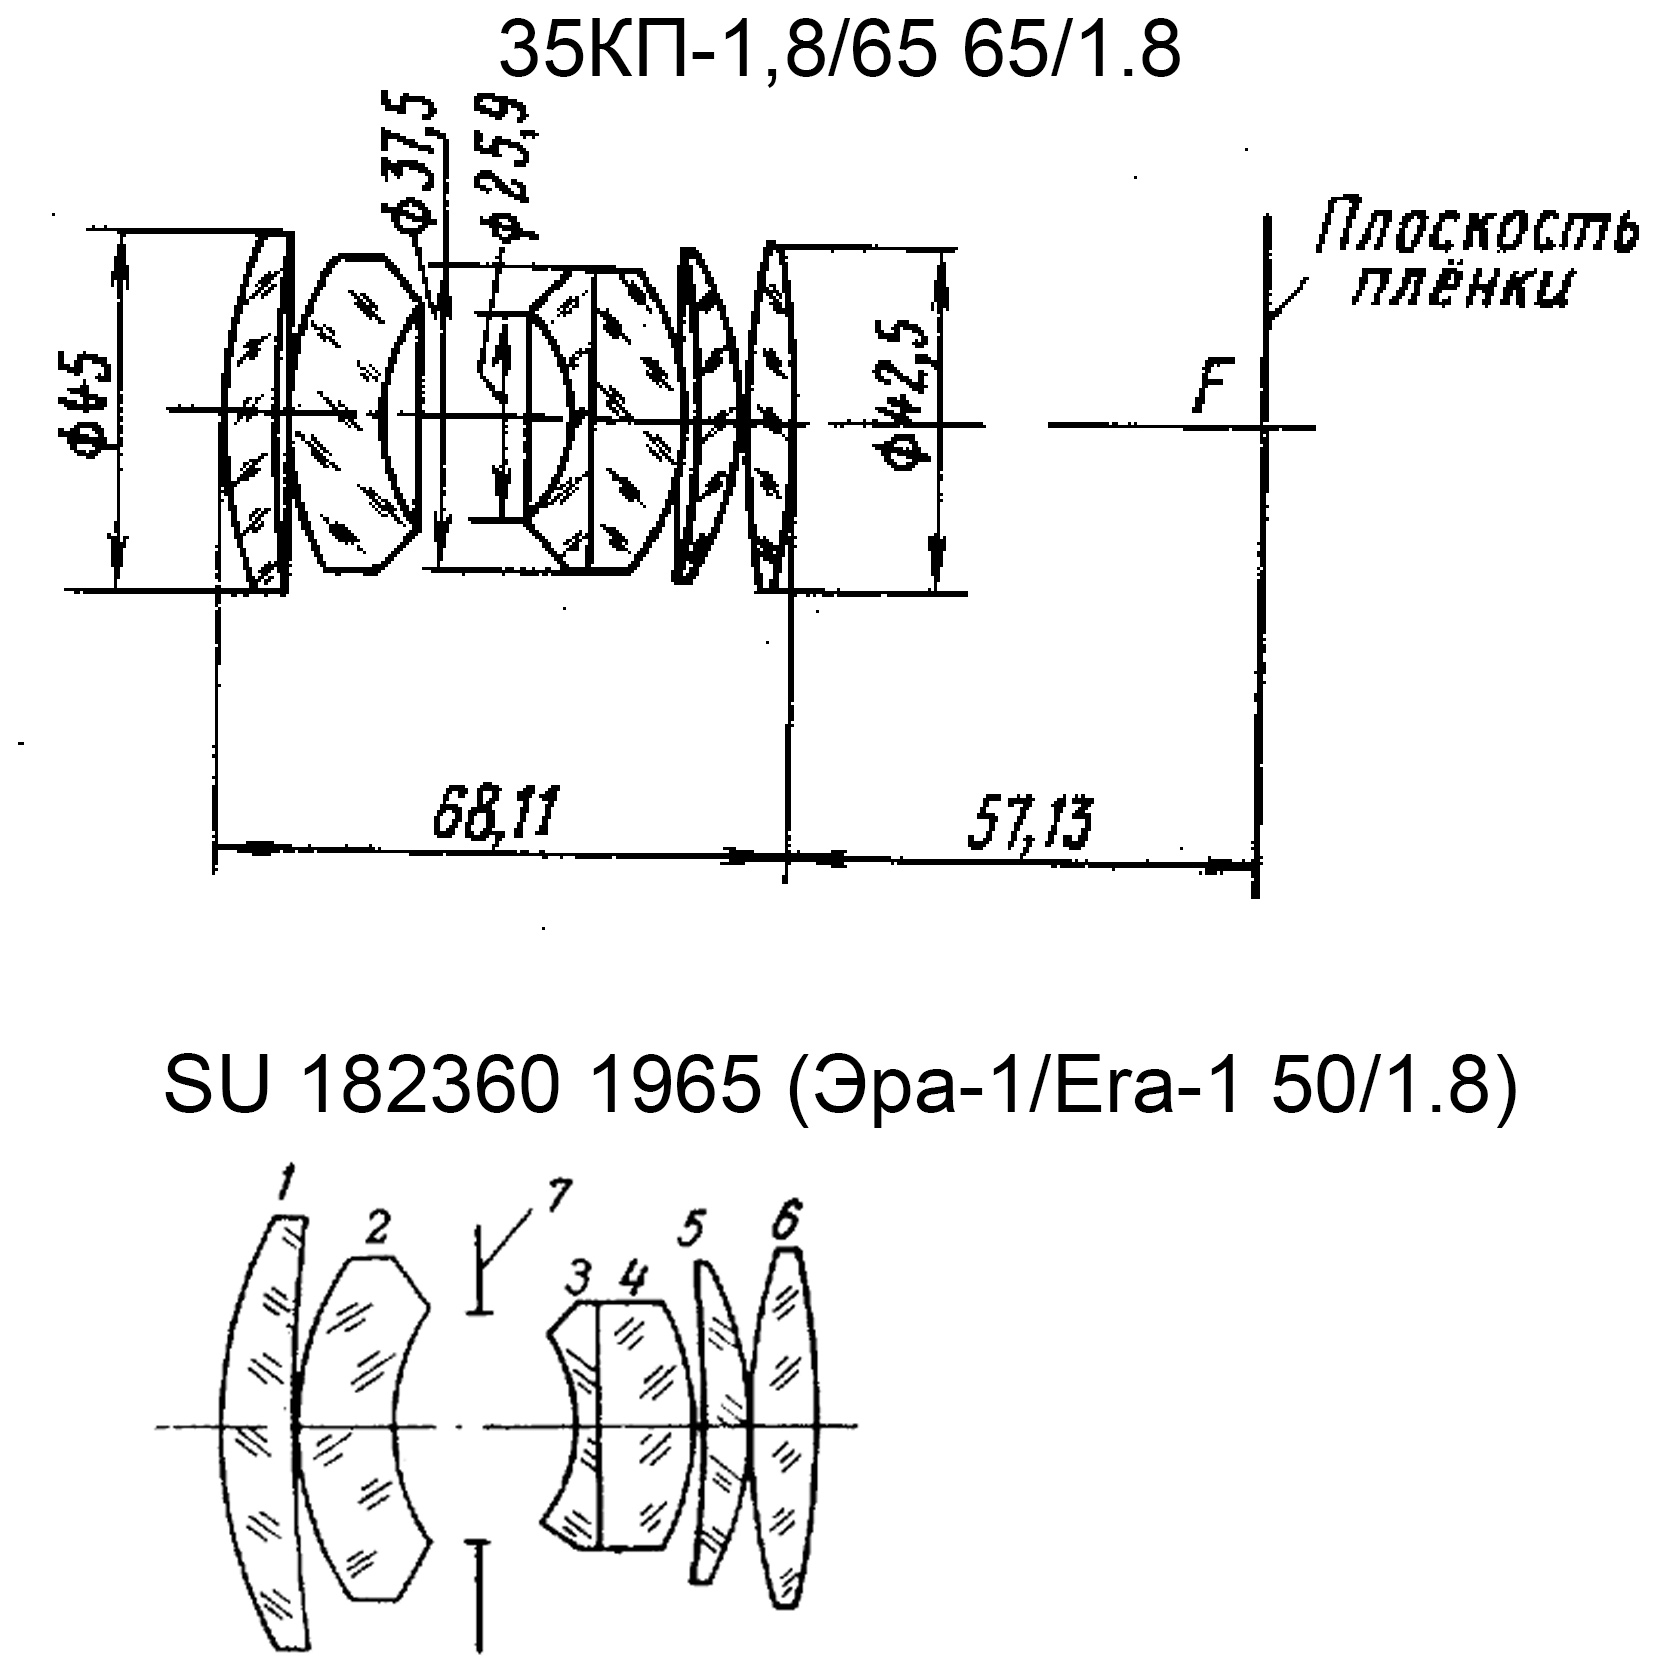 Сравнение рисунков оптических схем объективов 35КП-1,8/65 (из каталога Яковлева) и объектива из патента SU 182350.